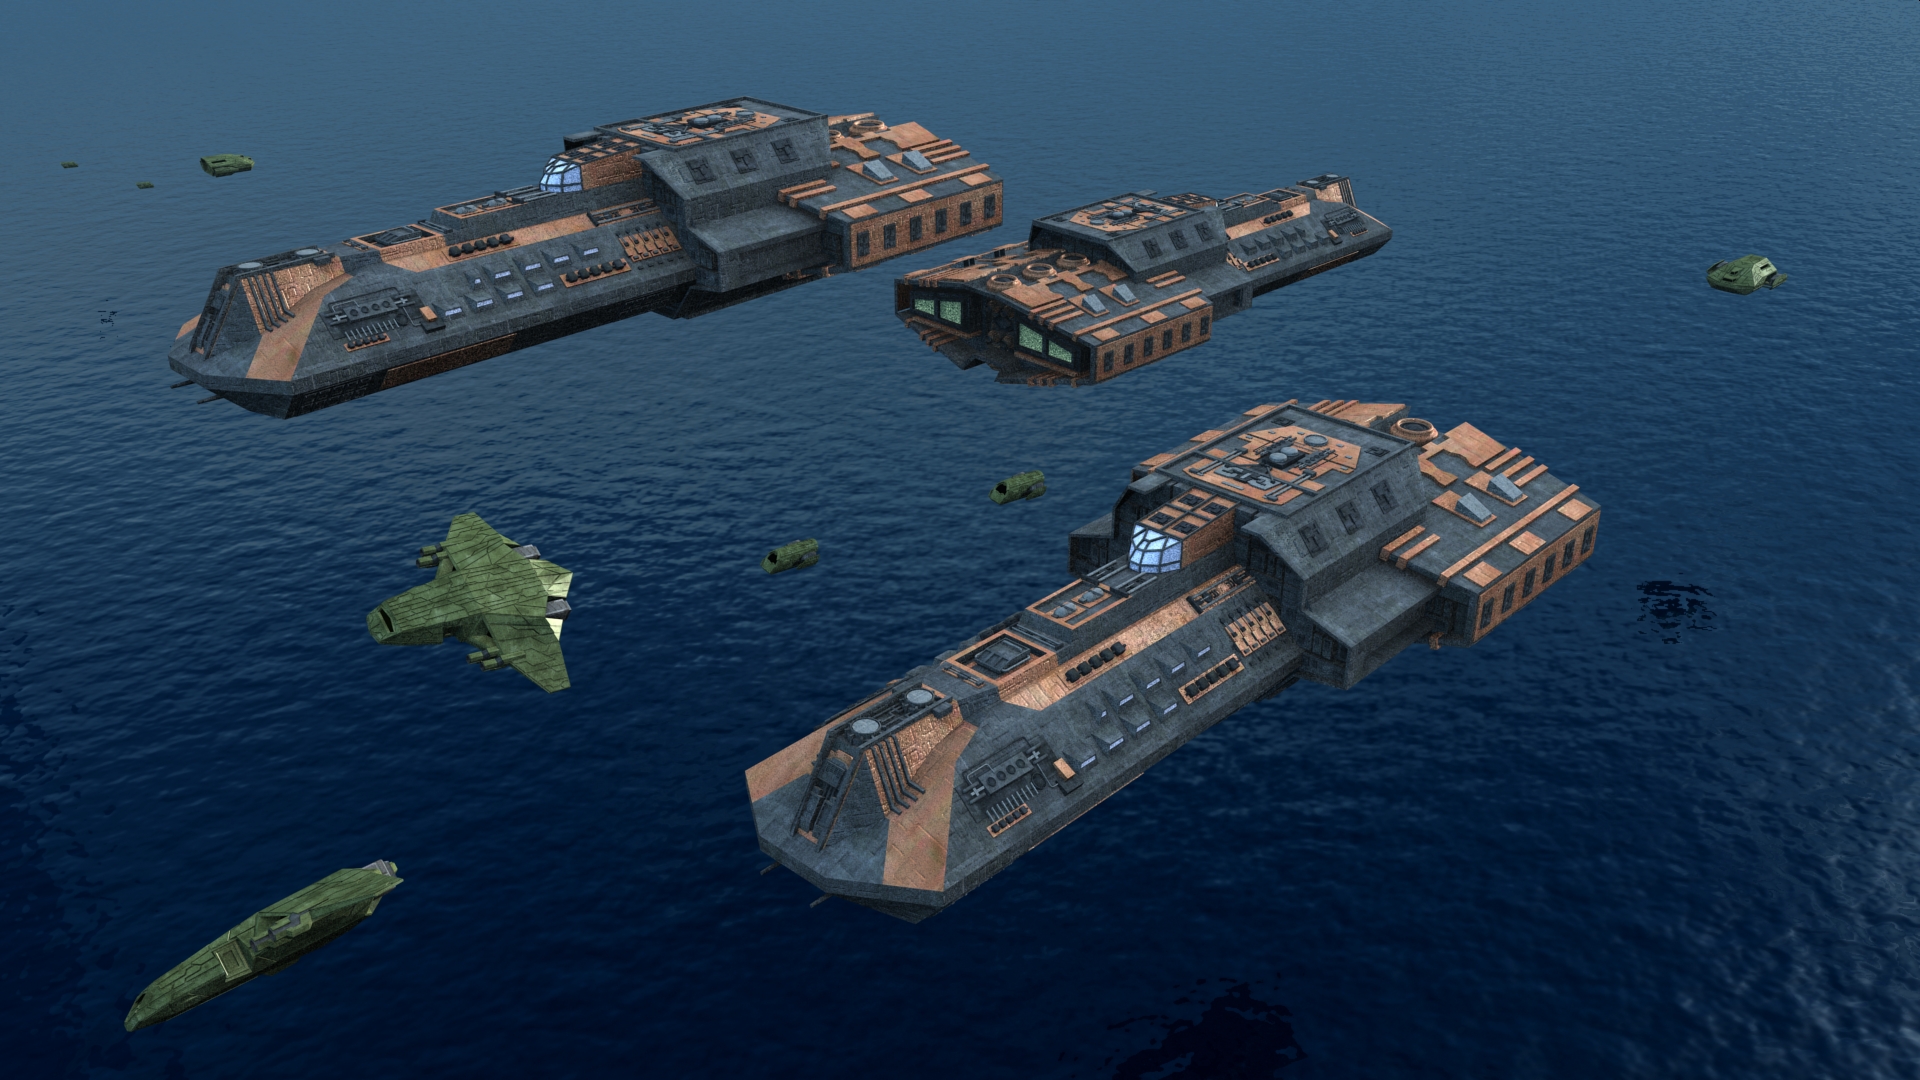 Atlantis 1. Звездные врата Атлантида корабли. Звёздные врата SG-1 корабли. Звездные врата Атлантида корабли древних.